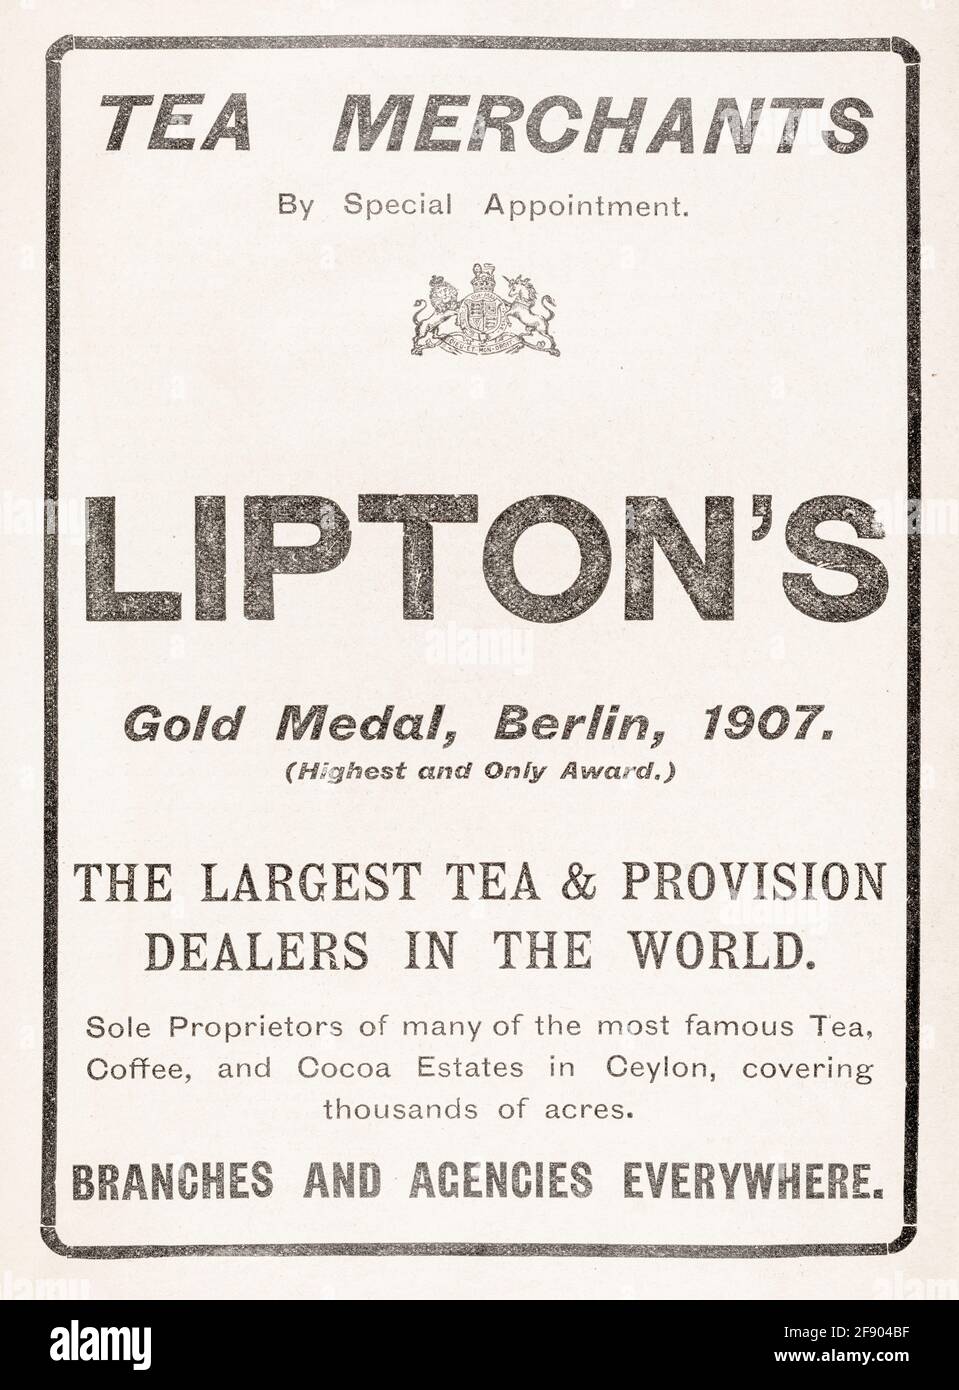 Vieux papier journal victorien d'époque Lipton's Tea publicité de 1907 - avant les normes de publicité. Publicité sur les boissons anciennes, marques de thé anciennes, commerce du thé Banque D'Images